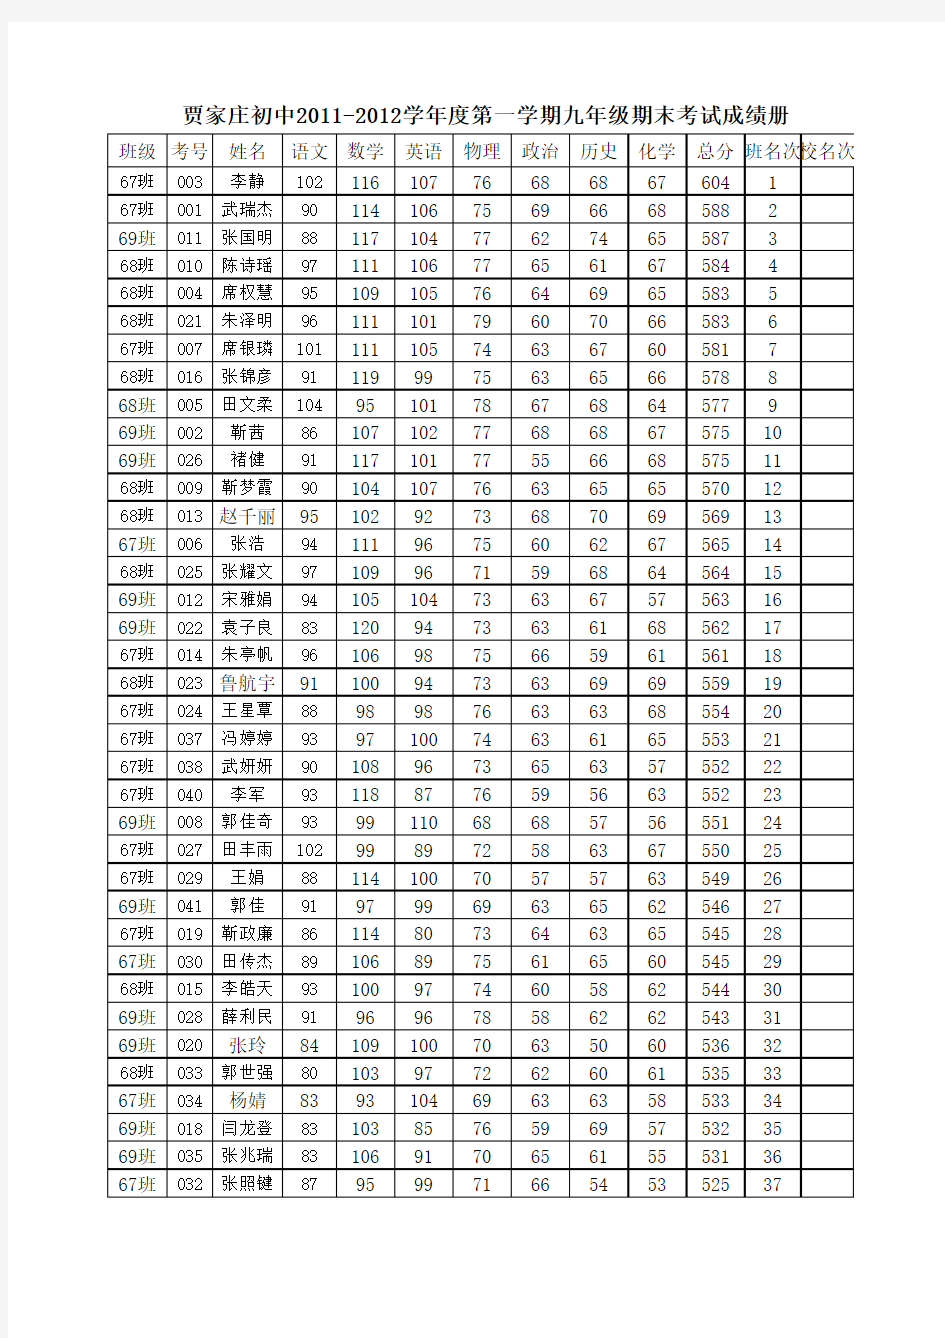 贾家庄初中2011-2012学年度第一学期九年级期末考试成绩册